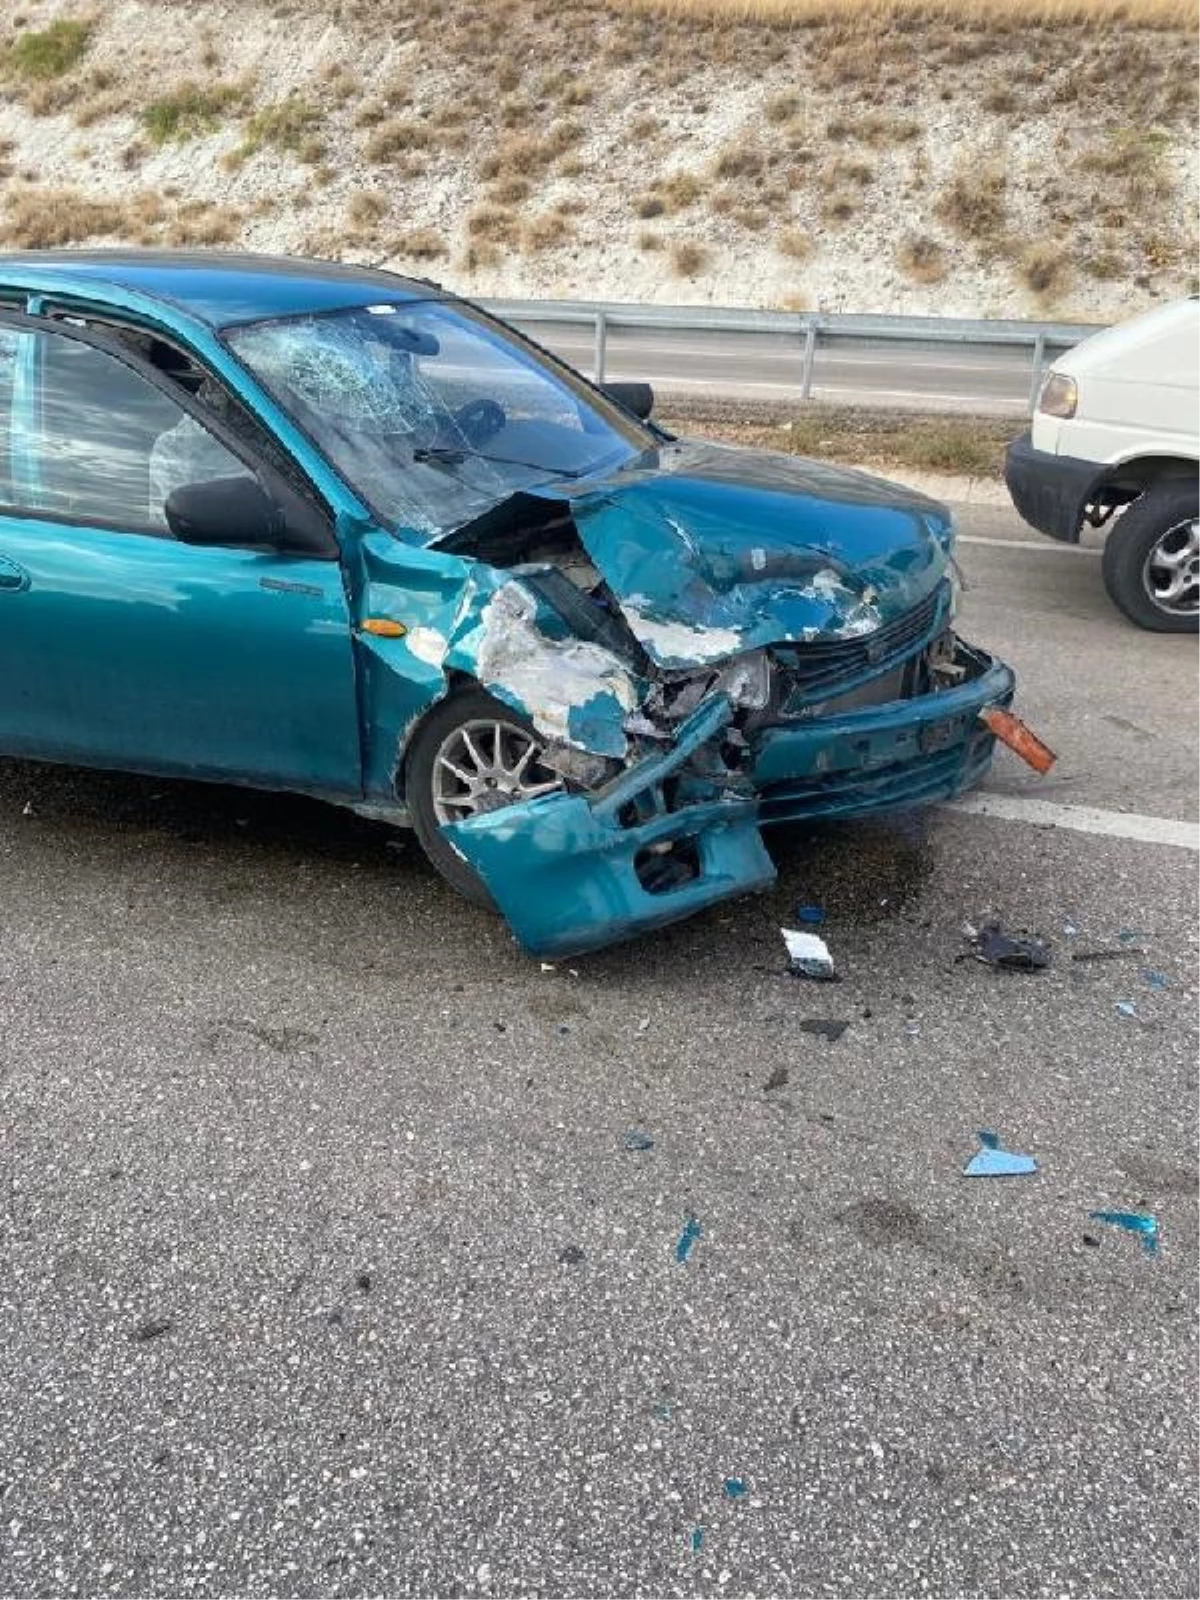 Beypazarı\'nda Minibüsün Sollama Girişimi Kazaya Yol Açtı: 6 Yaralı